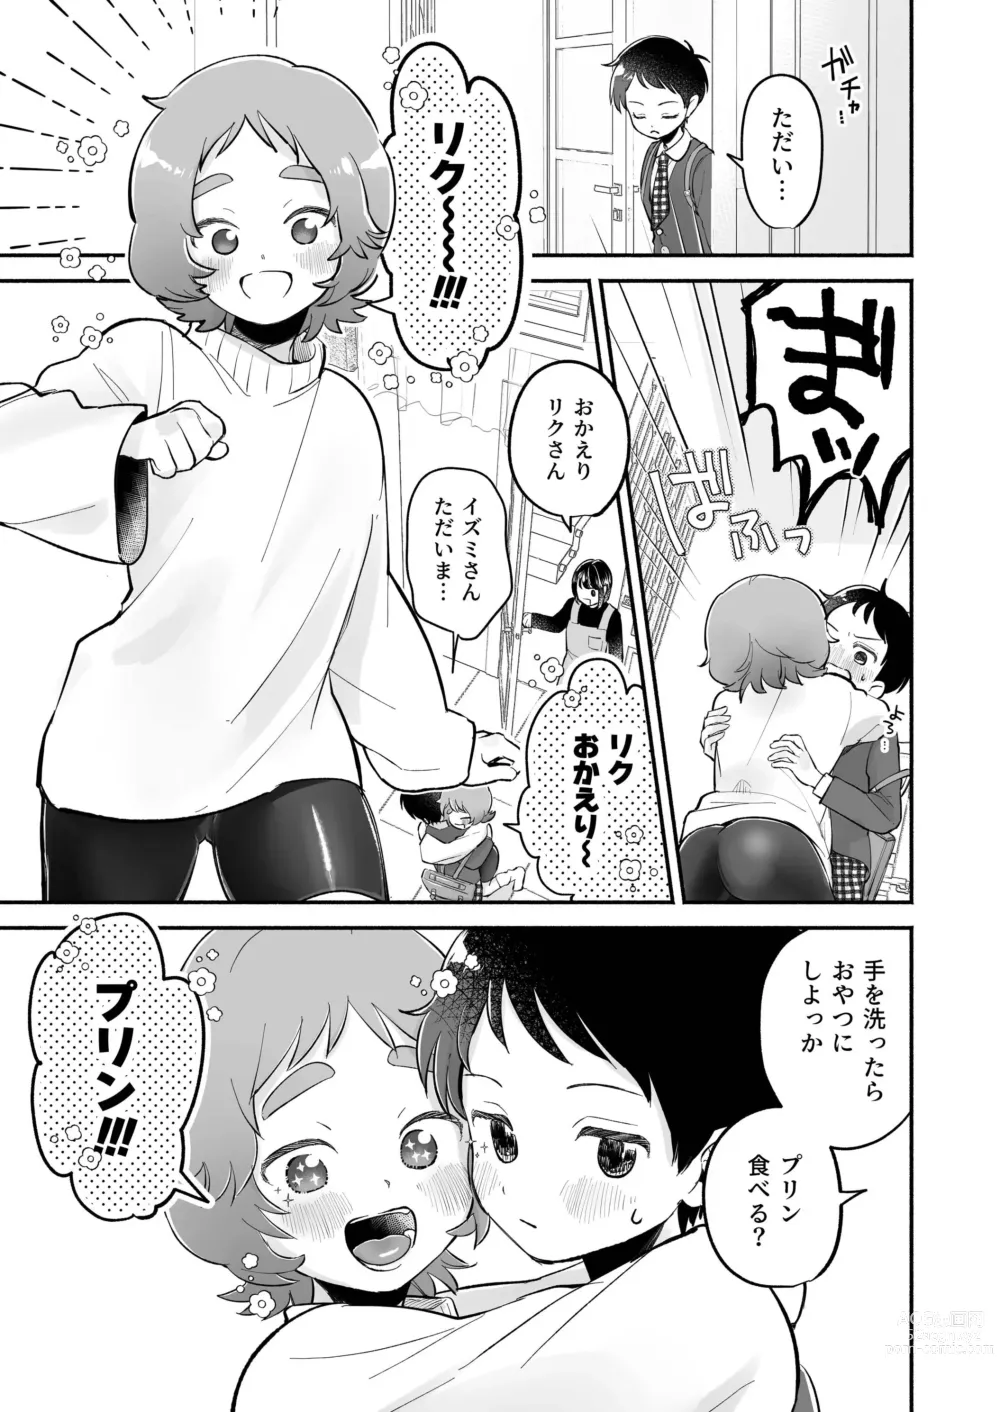 Page 5 of doujinshi Riku to Fuu Akachan Dekireba Kazoku ni Nareru no ka na